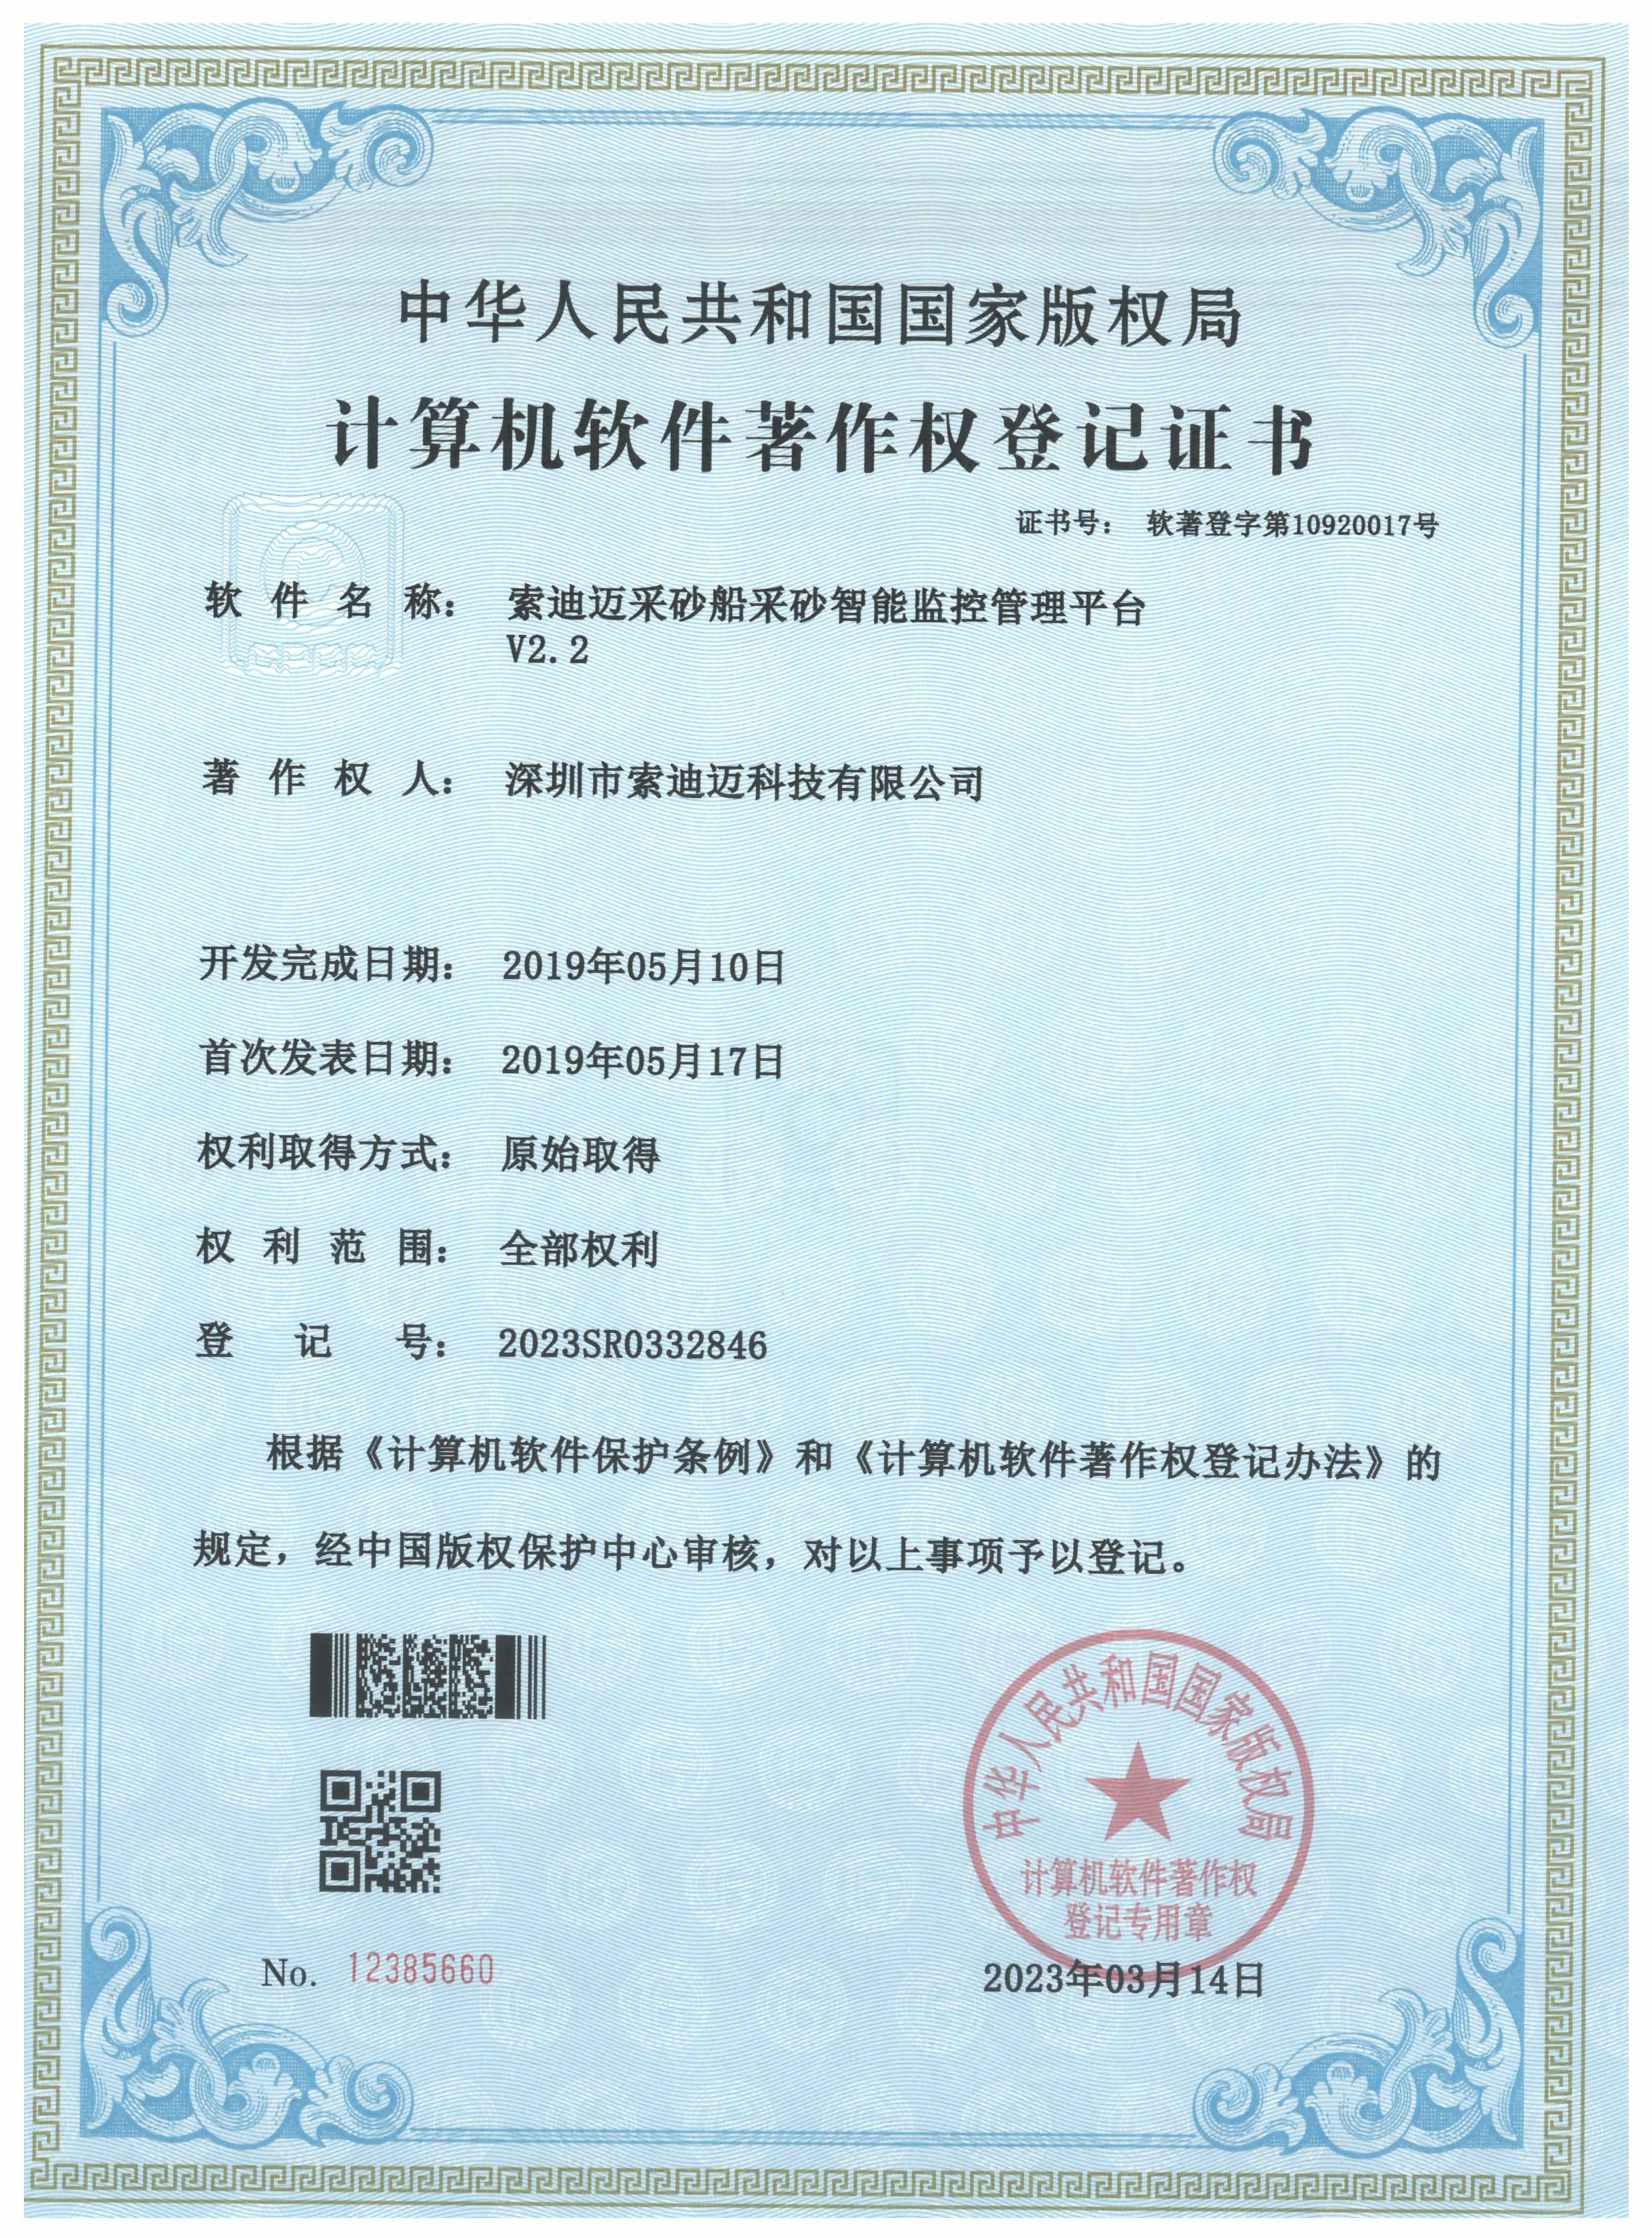 热烈祝贺公司获得计算机软著权登记证书(图1)